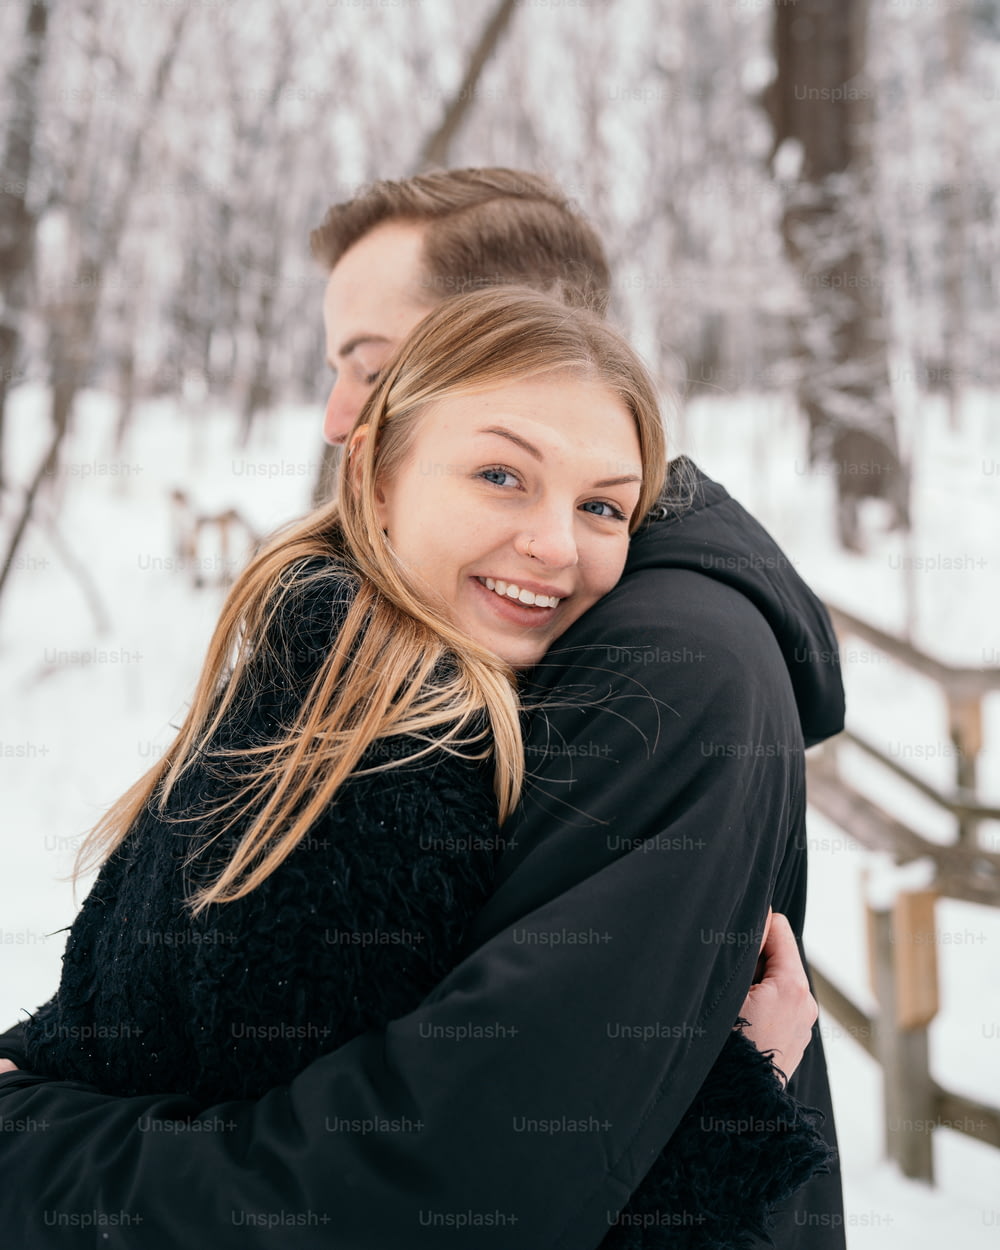 Un hombre abrazando a una mujer en la nieve